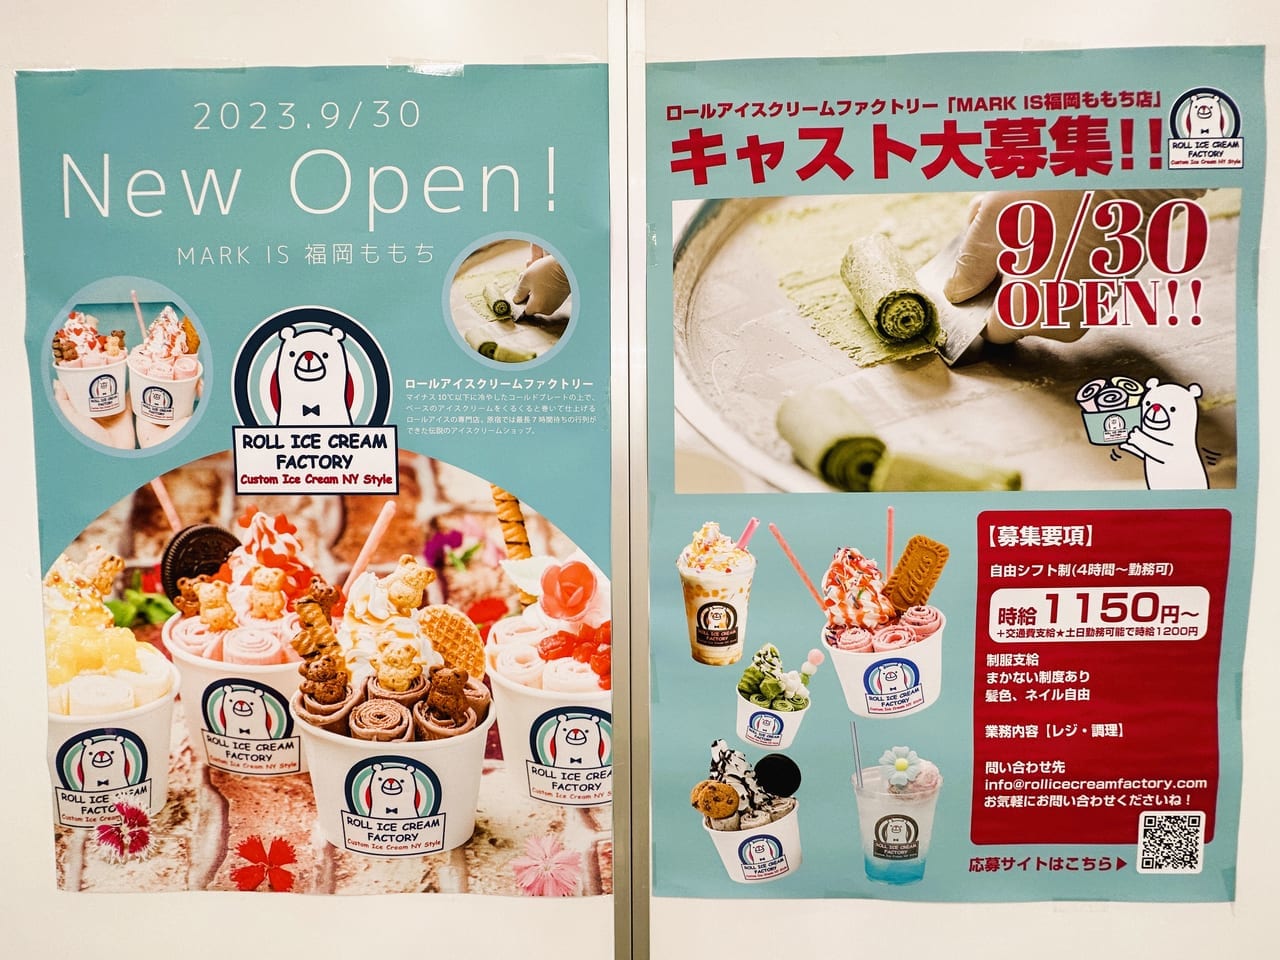 『 ロールアイスクリームファクトリー 』が、”MARK IS 福岡ももち” にやってきます！